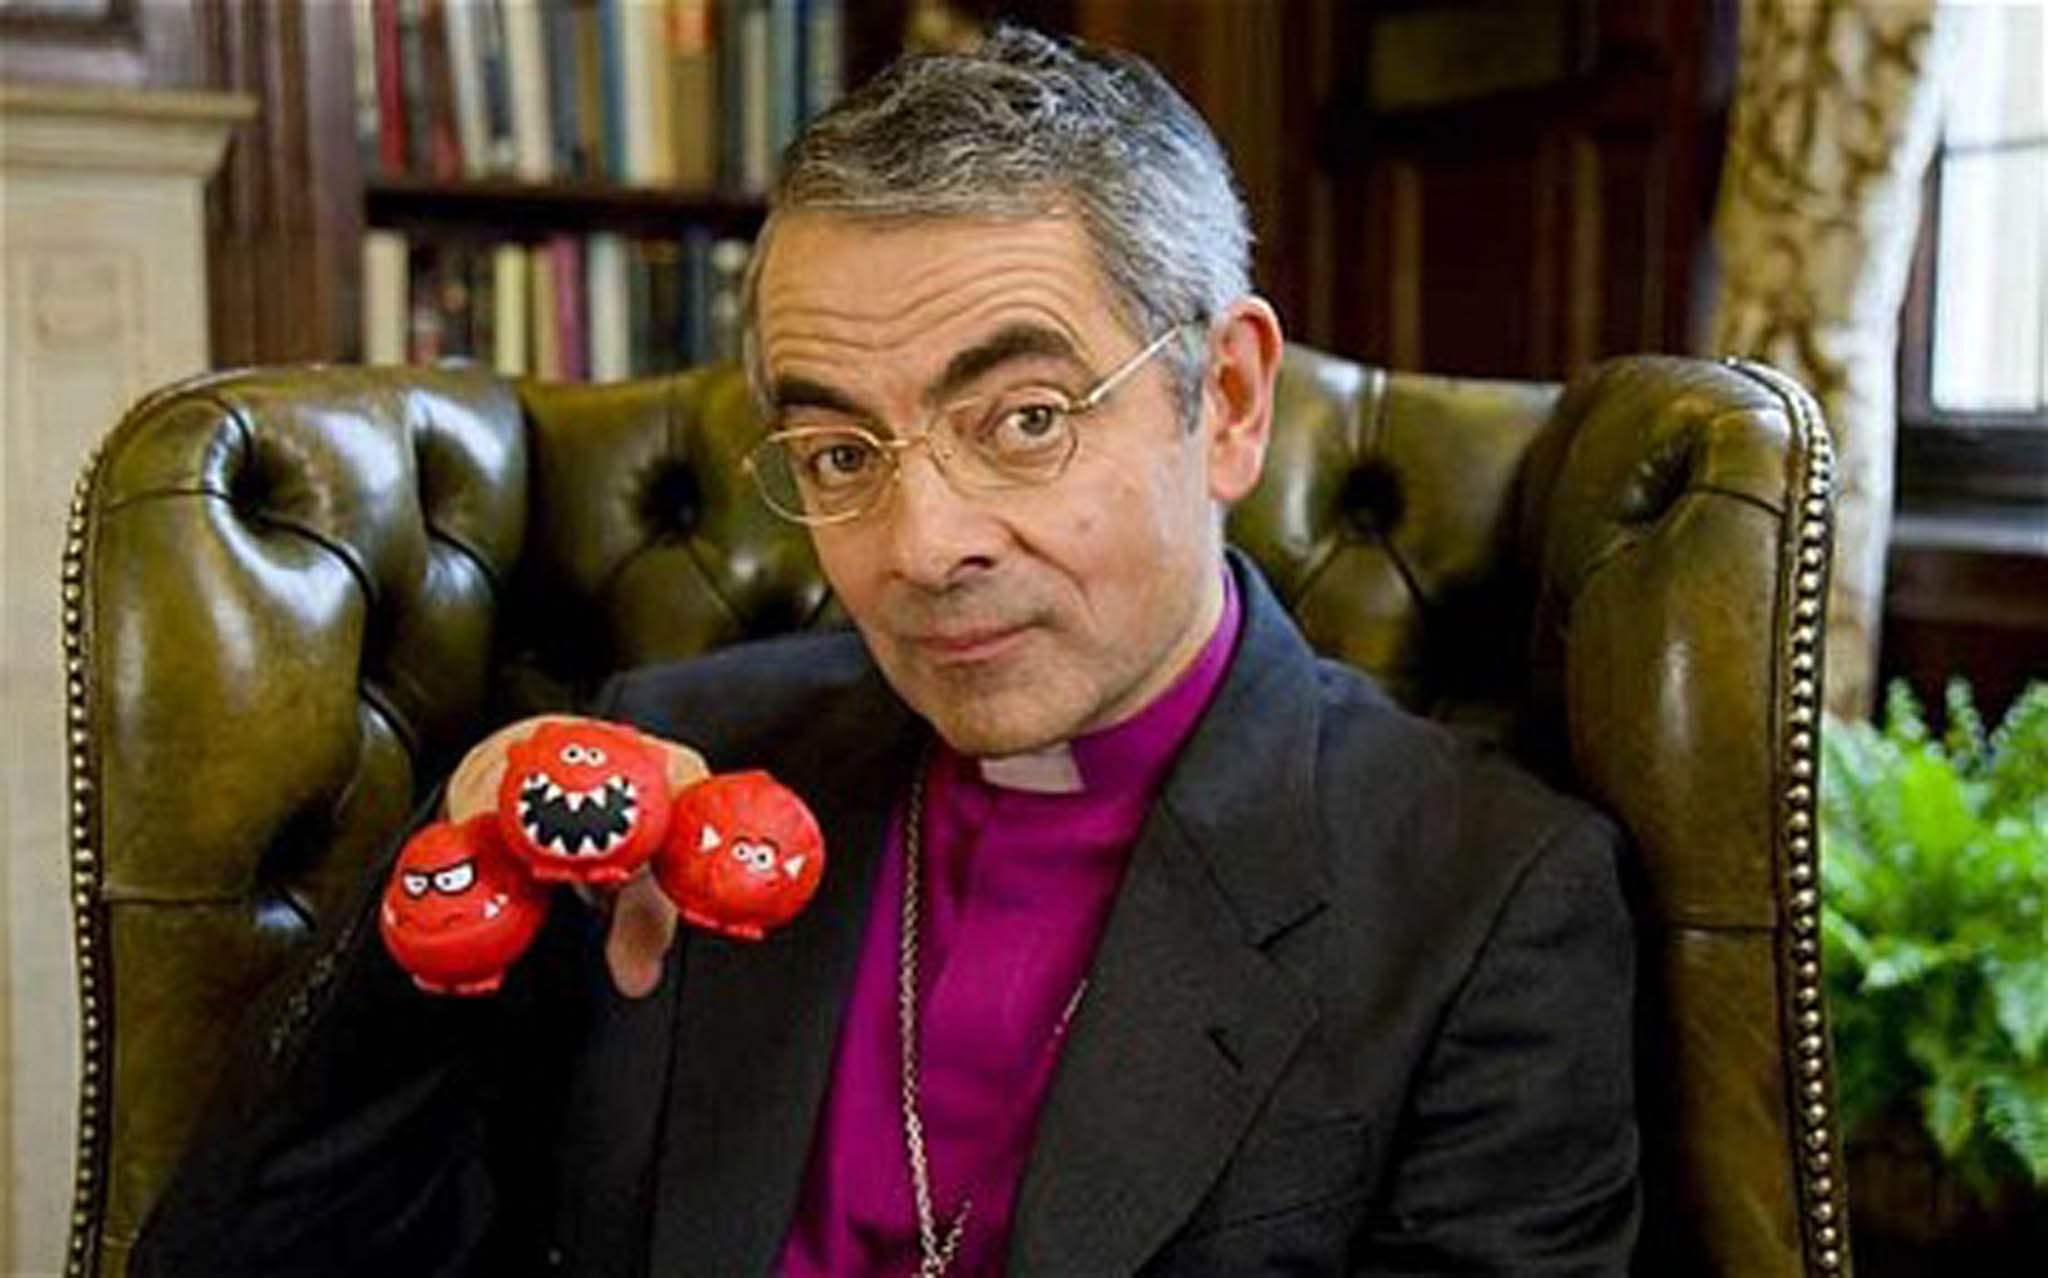 Rowan Atkinson in his Comic Relief sketch as Archbishop of Canterbury